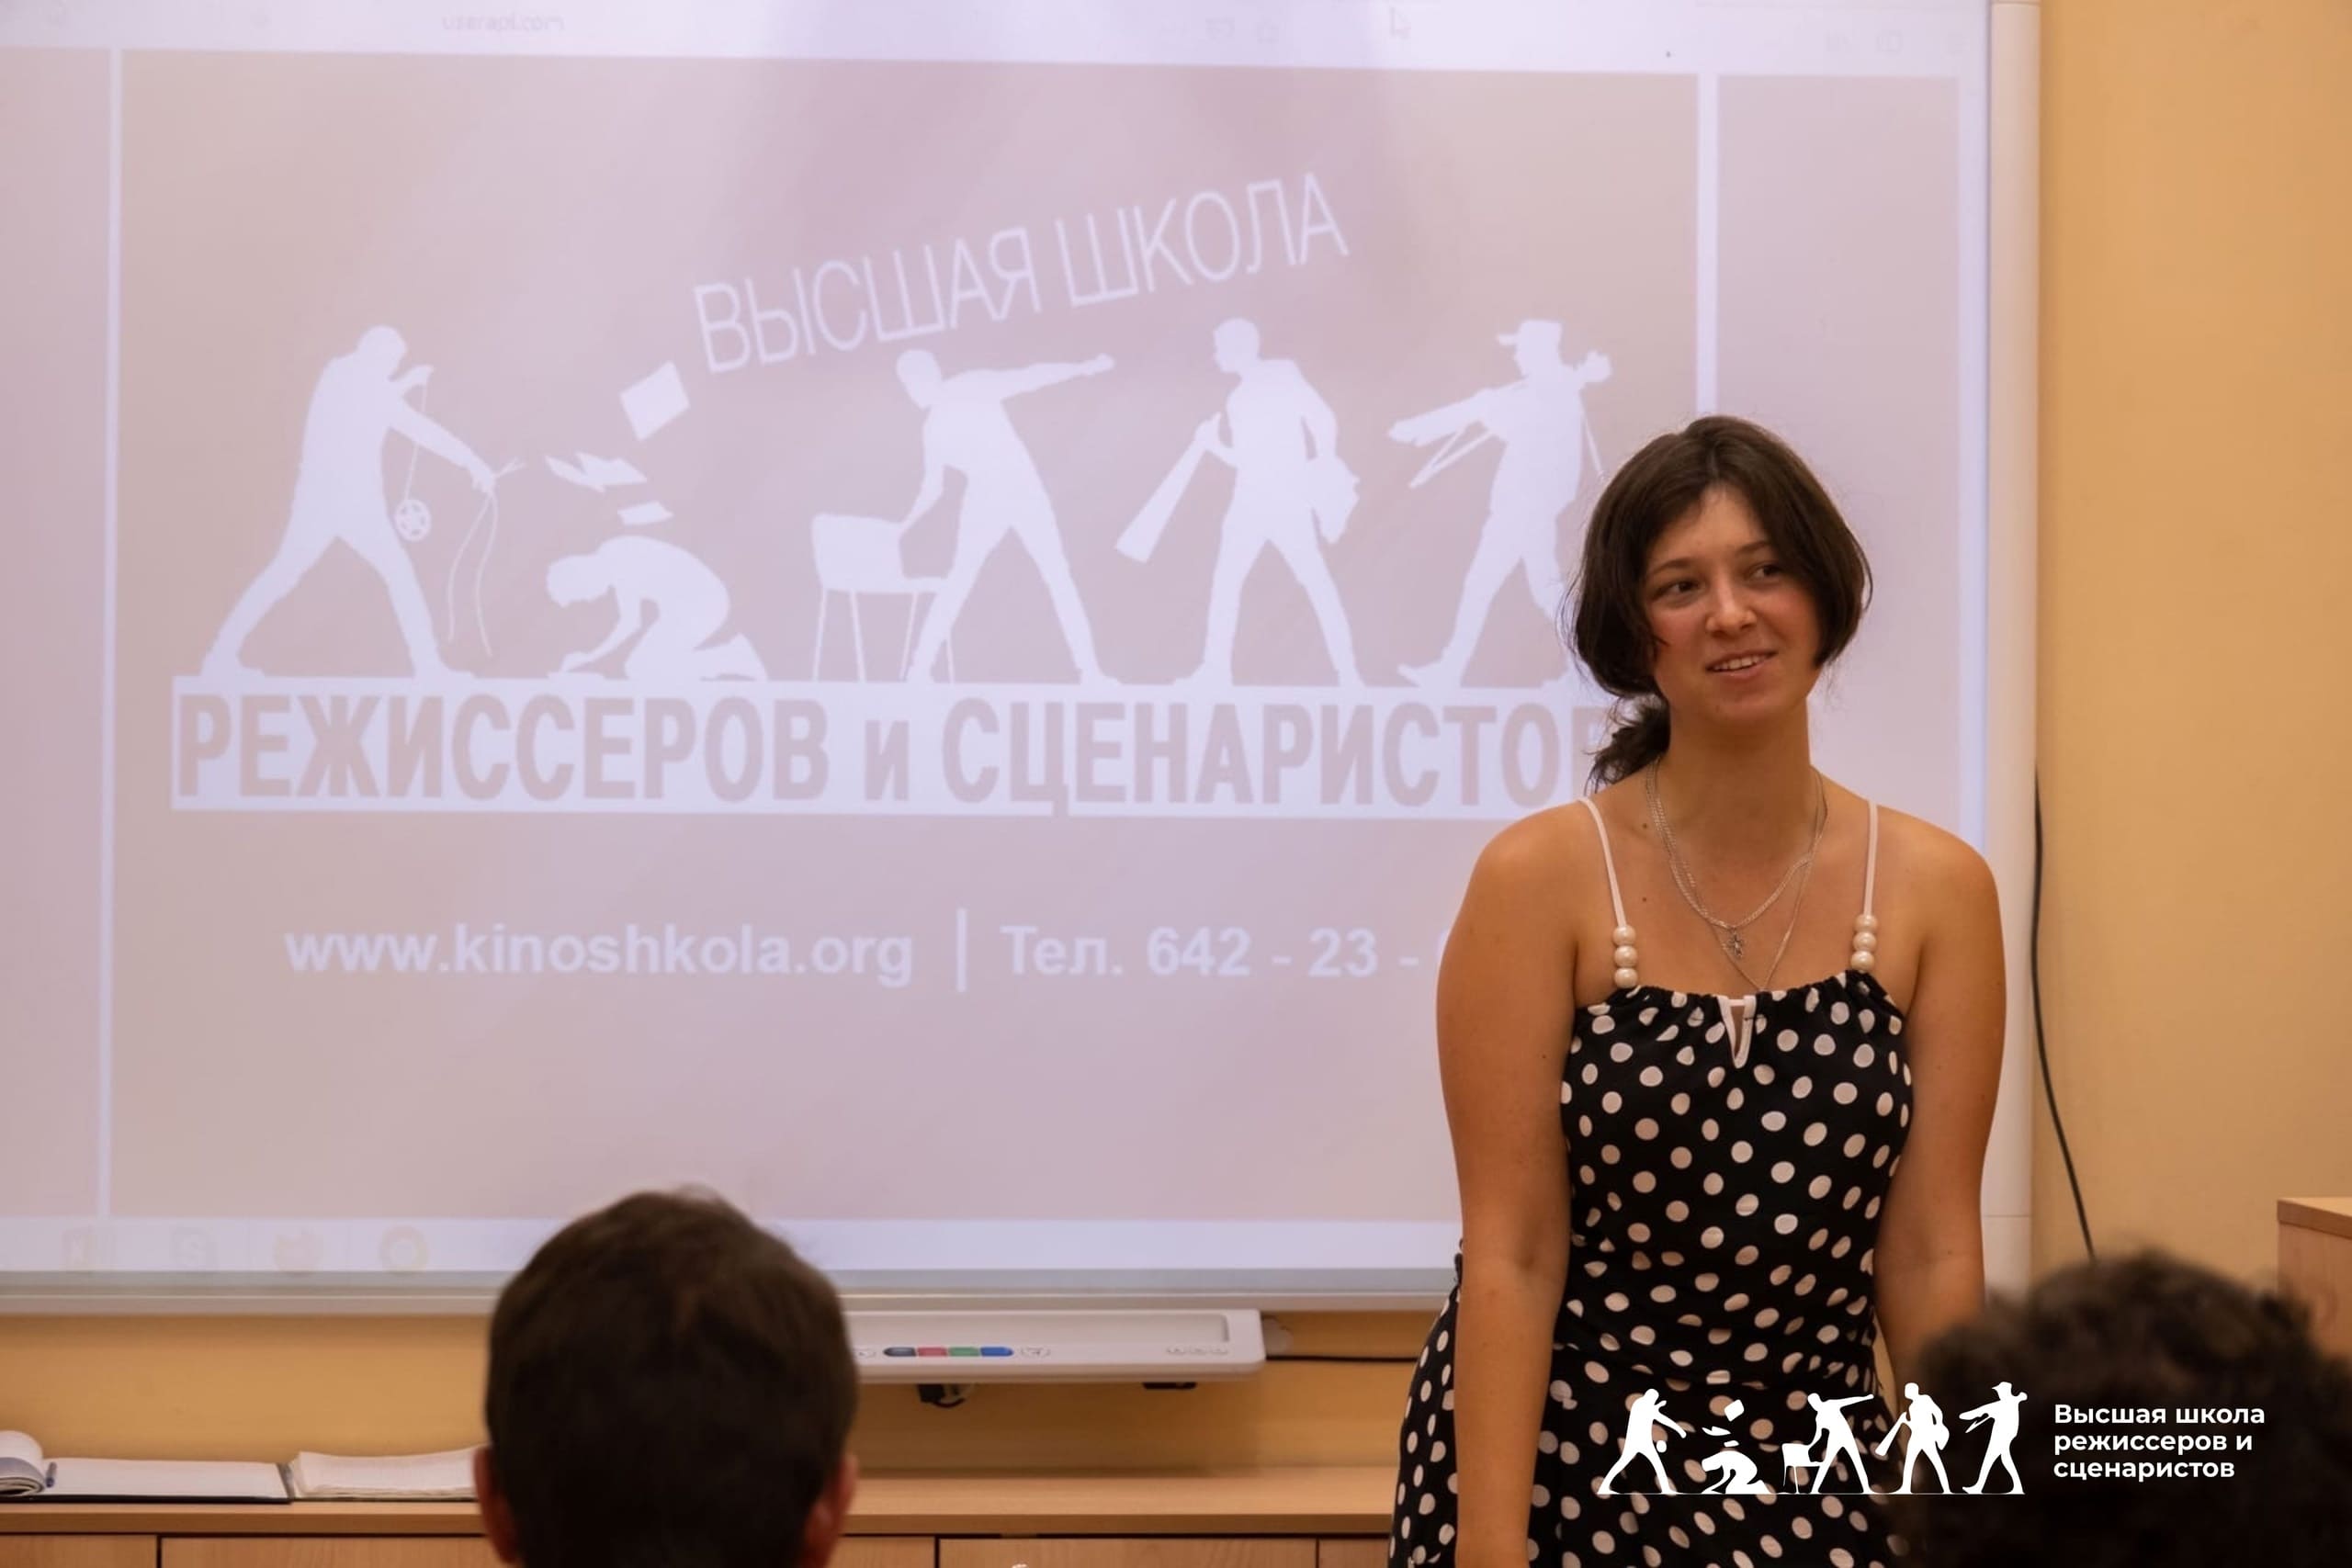 Мария Пойлова представляет Высшую школу режиссеров и сценаристов в Севастополе